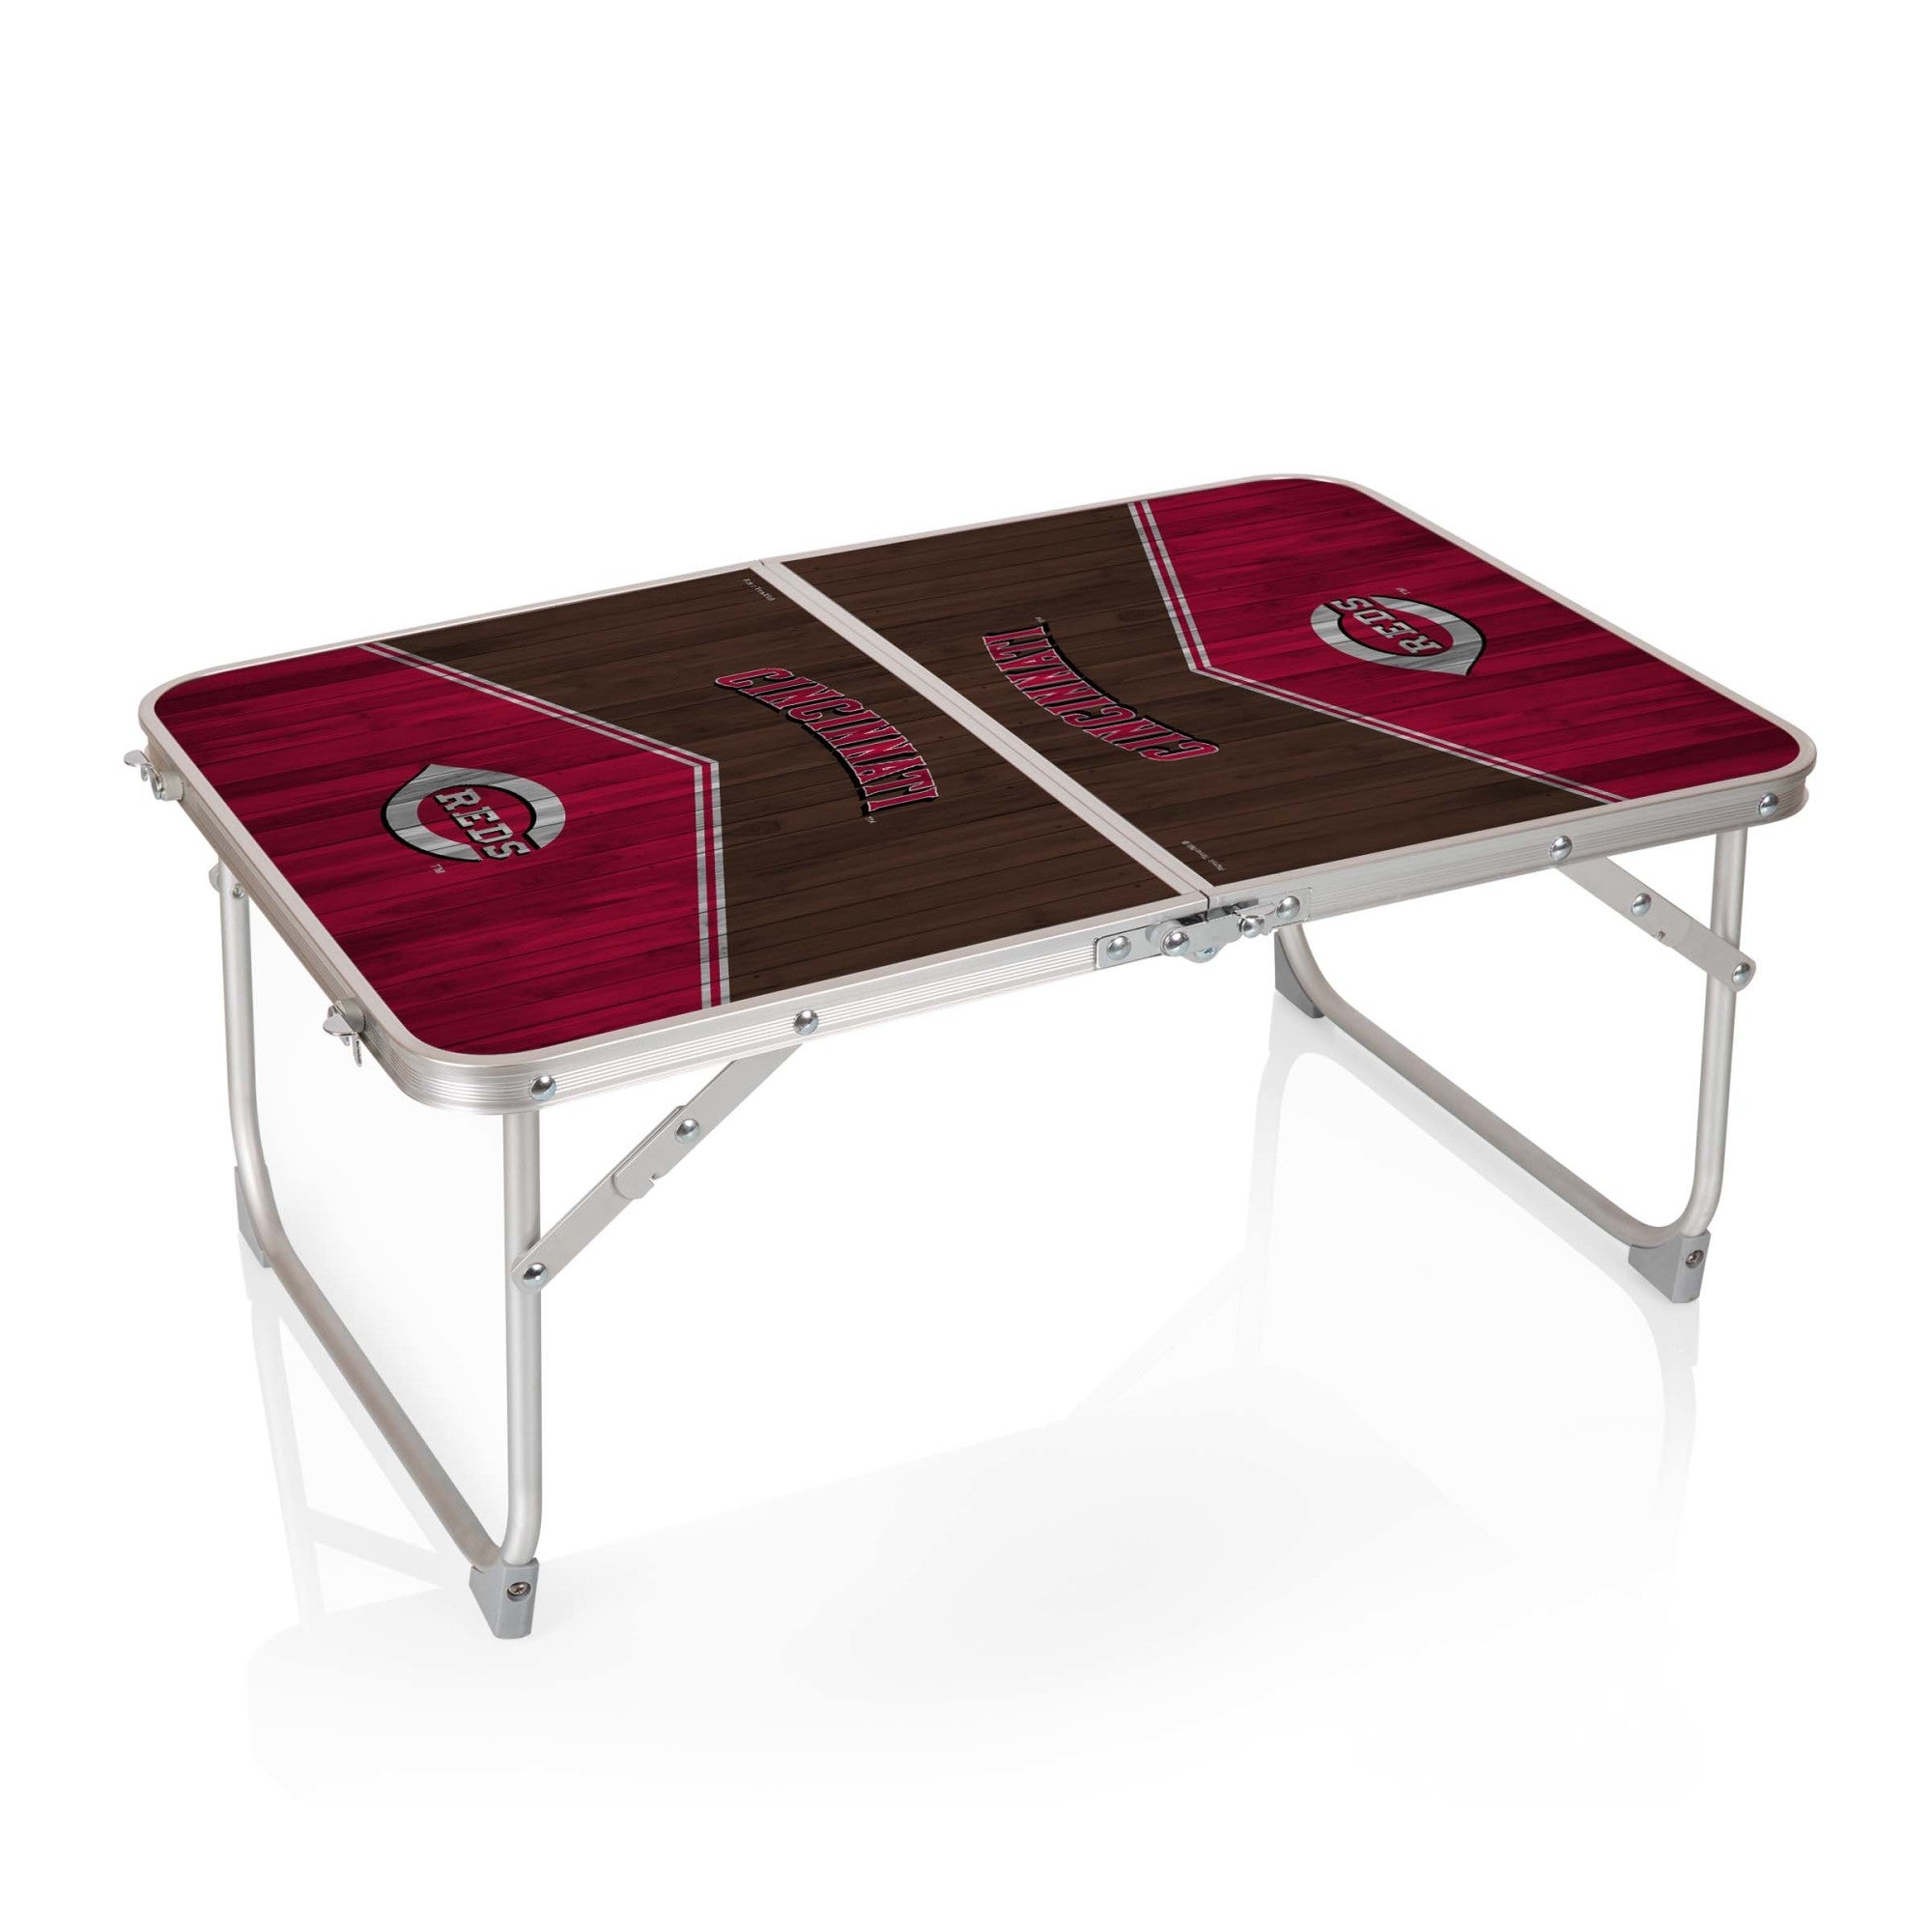 Cincinnati Reds - Concert Table Mini Portable Table